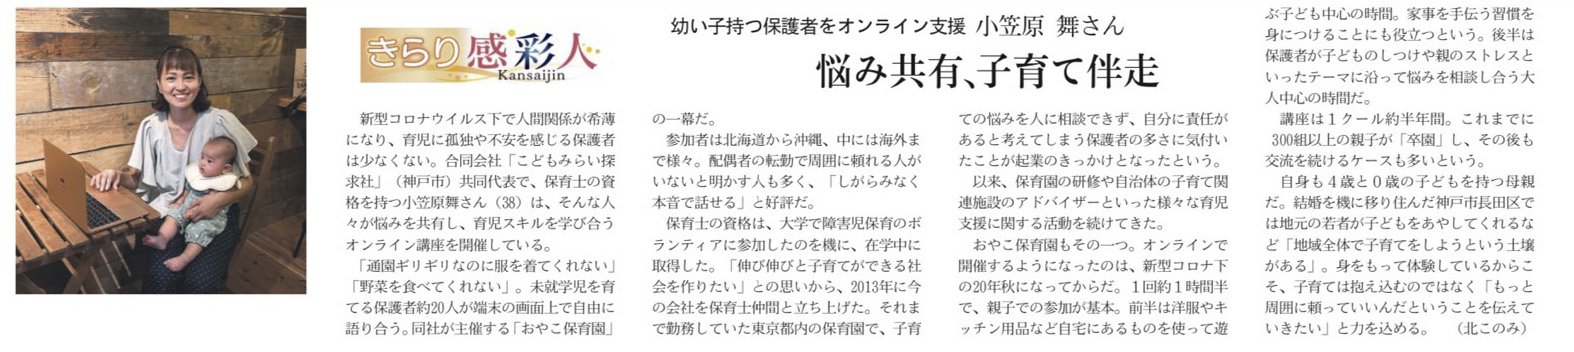 小笠原のインタビューが記事が日経新聞関西版に掲載されました。